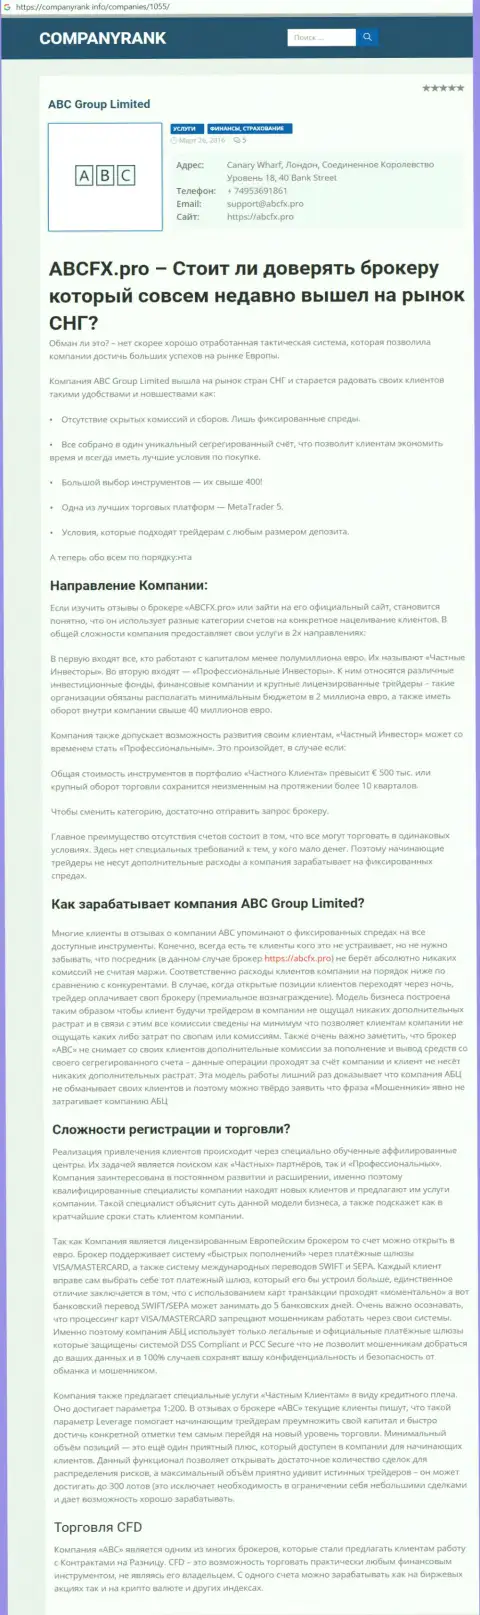 Статья о Форекс брокерской организации ABC Group на информационном портале компаниранк инфо